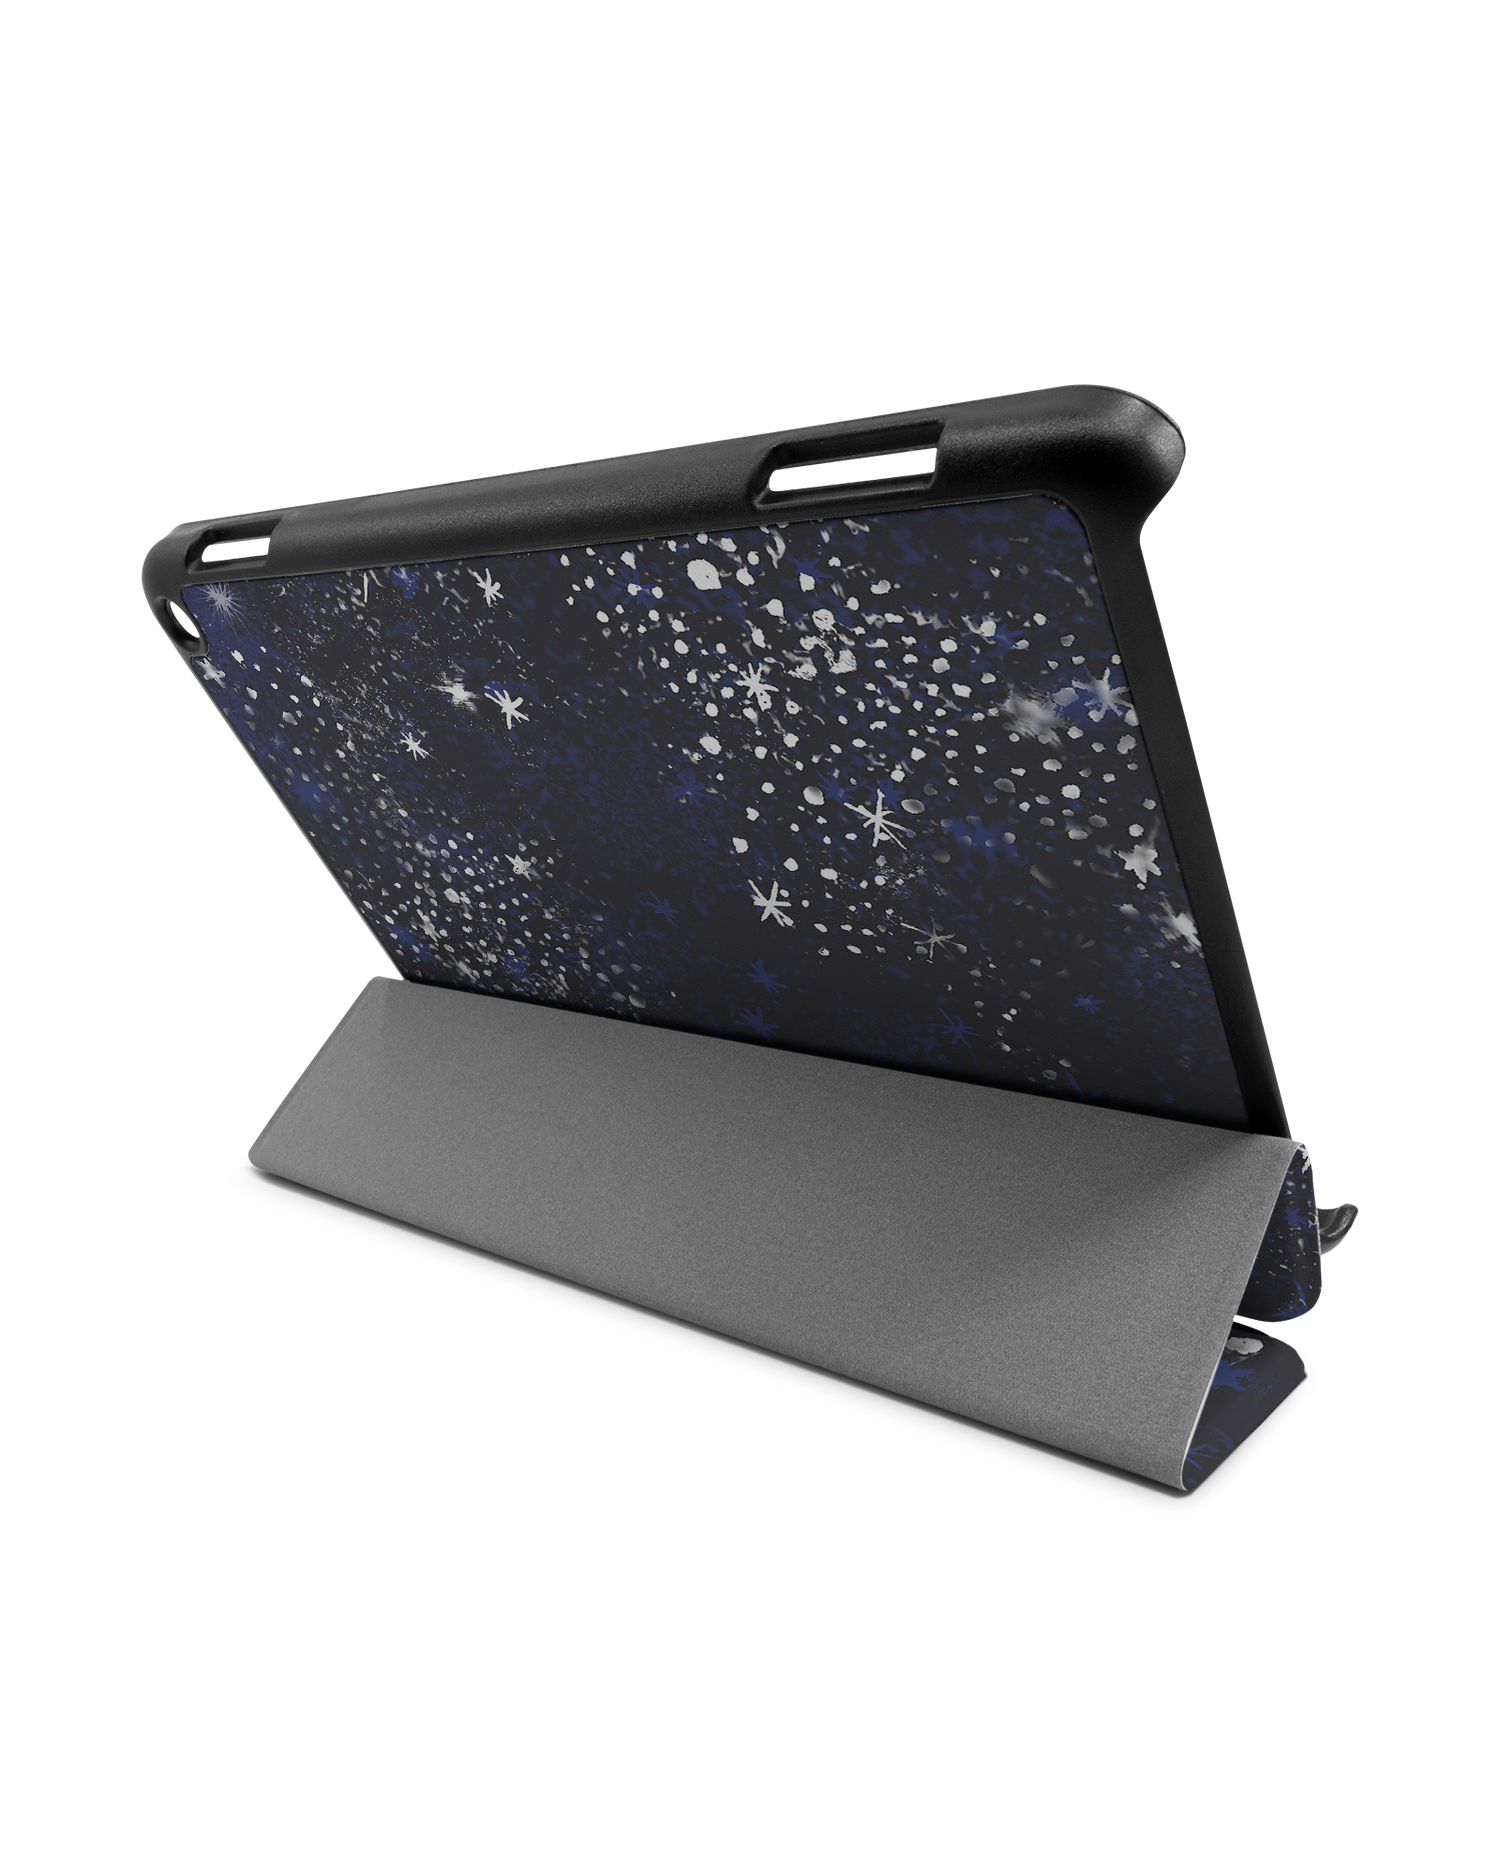 Starry Night Sky Tablet Smart Case für Amazon Fire HD 8 (2022), Amazon Fire HD 8 Plus (2022), Amazon Fire HD 8 (2020), Amazon Fire HD 8 Plus (2020): Aufgestellt im Querformat